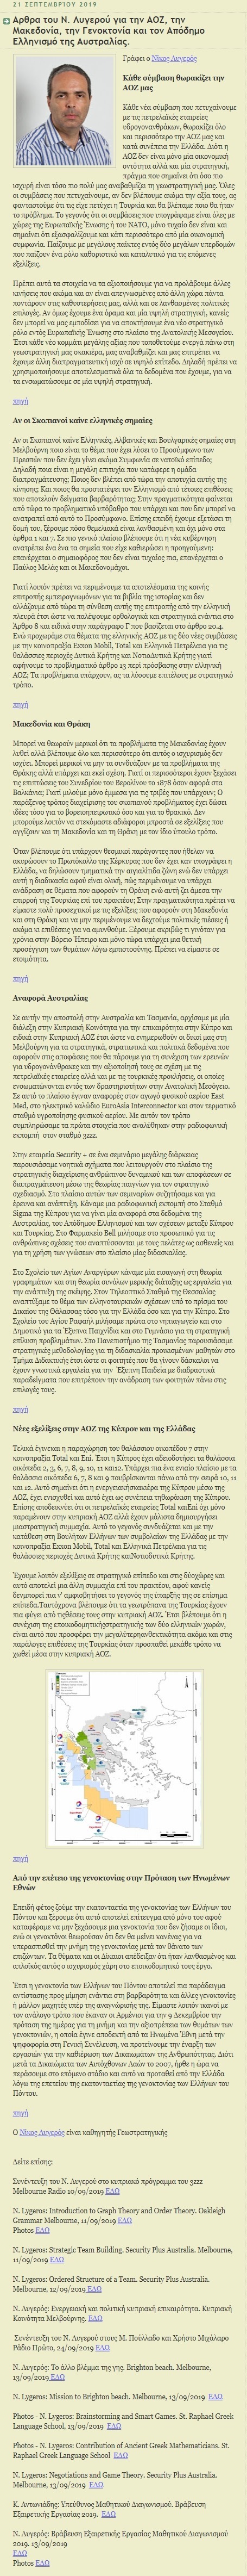 Αρθρα του Ν. Λυγερού για την ΑΟΖ, την Μακεδονία, την Γενοκτονία και τον Απόδημο Ελληνισμό της Αυστραλίας, koukfamily, 21/09/2019 - Publication